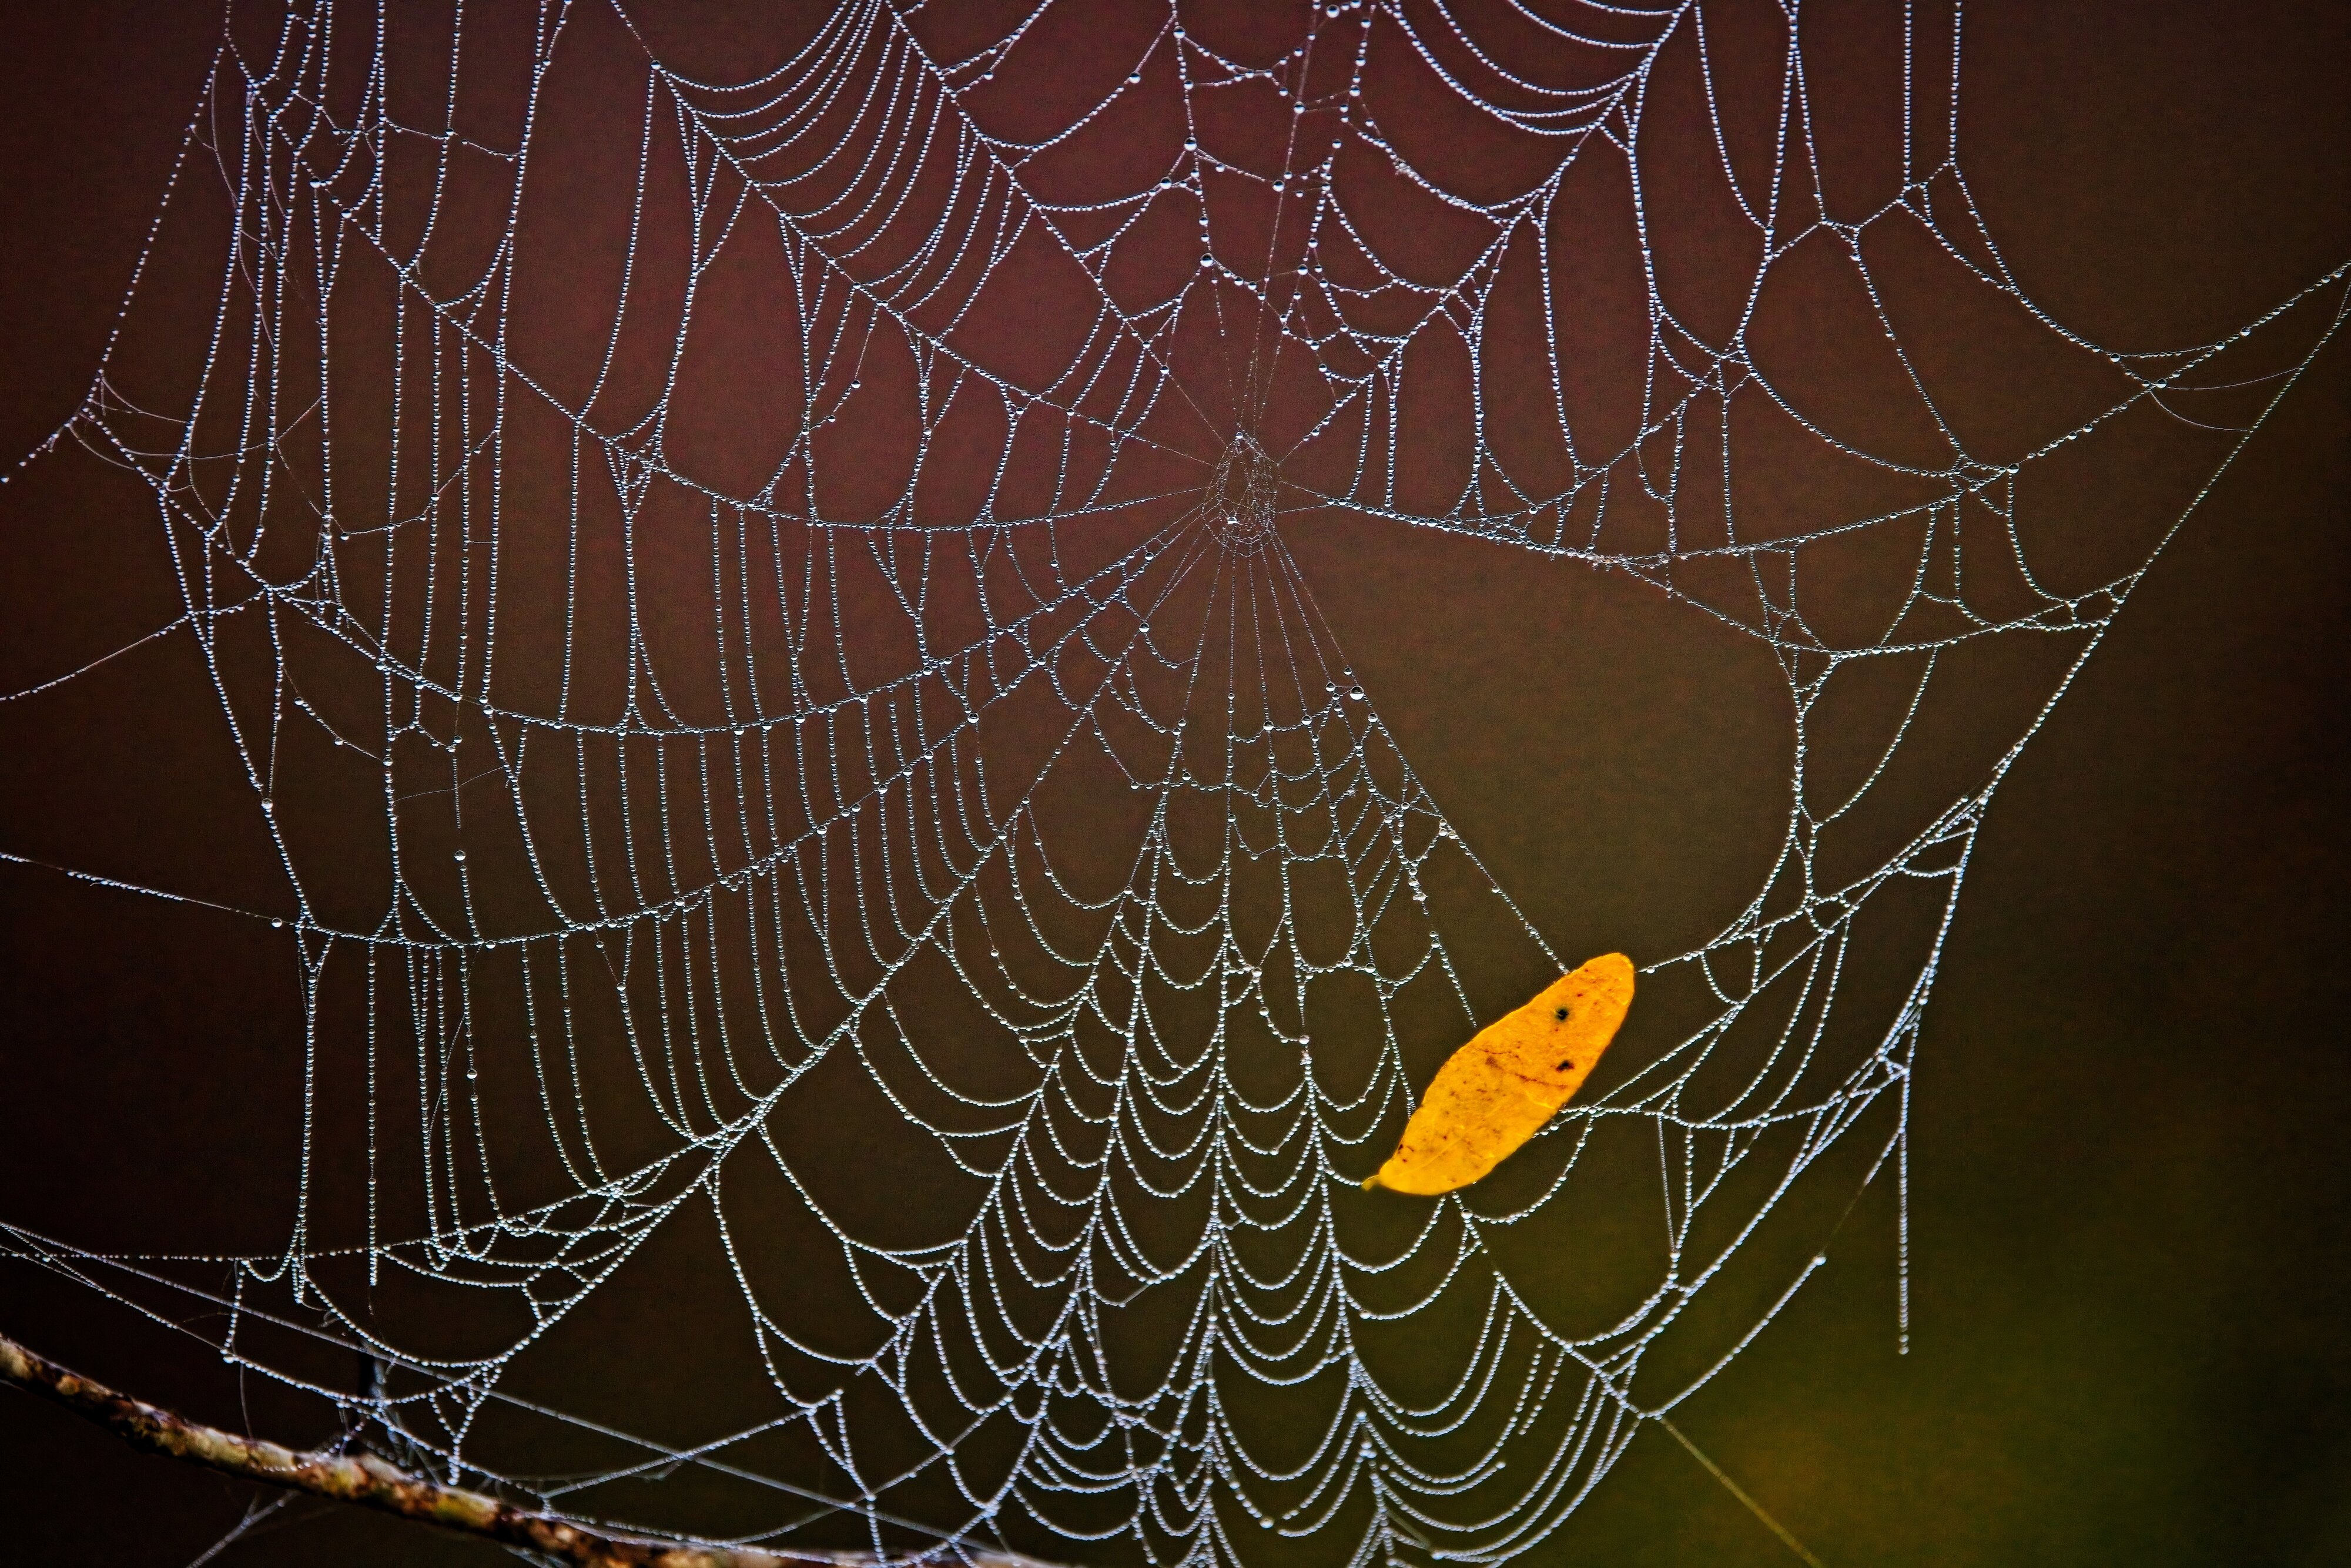 Dewey spider web at Brazos Bend State Park